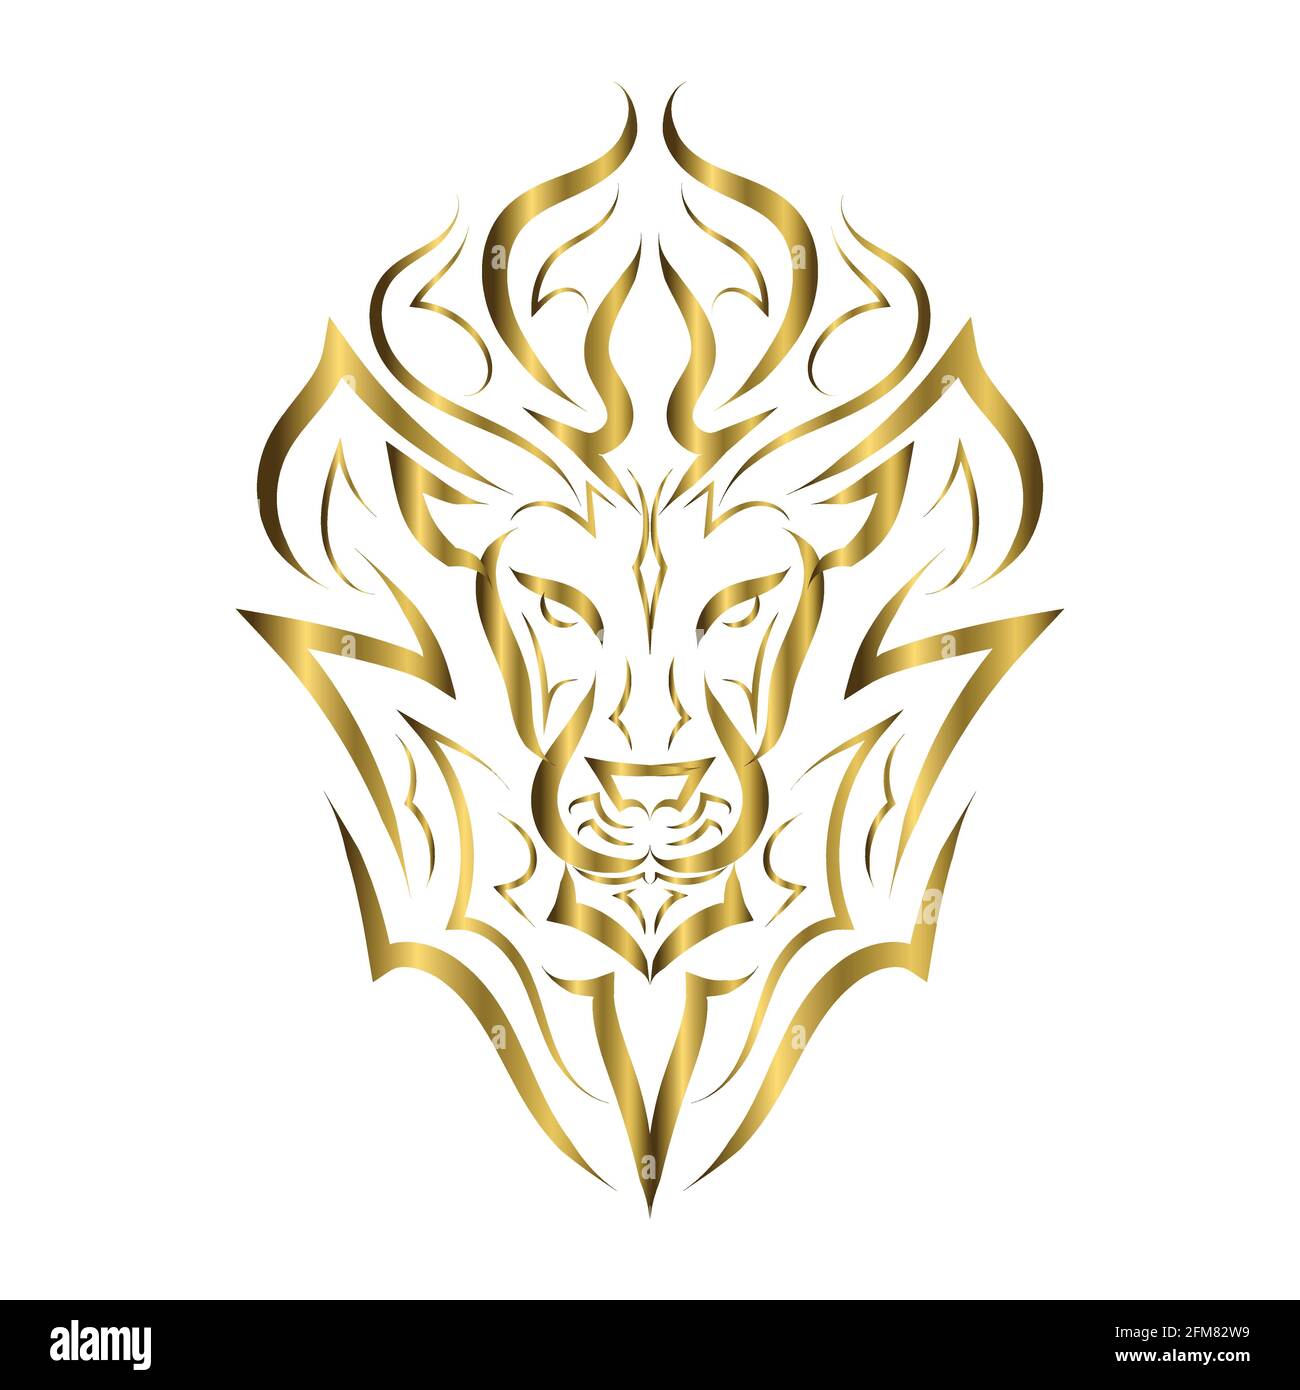 Goldene Linienkunst der Vorderseite des Löwenkopfes. Es ist ein Zeichen des leo-Tierkreises. Gute Verwendung für Symbol, Maskottchen, Symbol, Avatar, Tattoo, T-Shirt-Design, Logo oder ein Stock Vektor